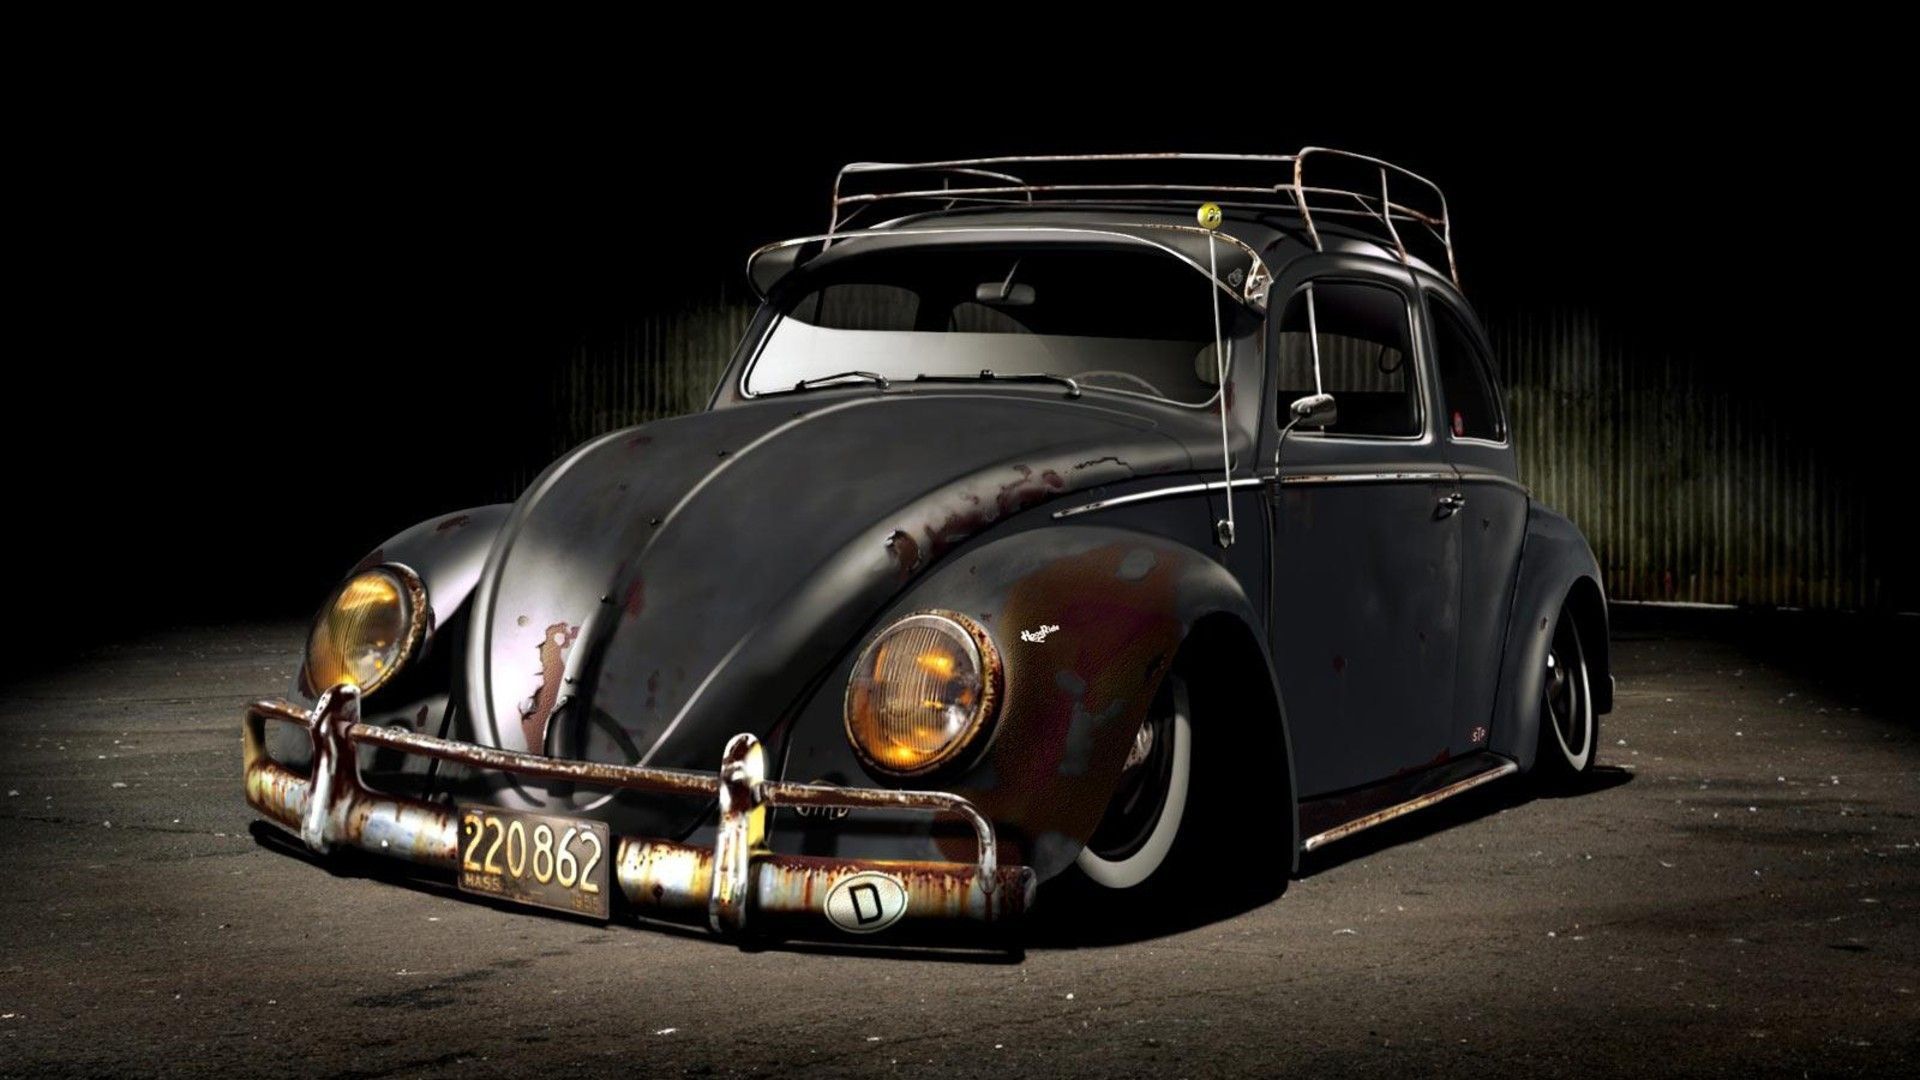 Volkswagen Beetle Wallpaper High Definition Yq. Cool car picture, Volkswagen car, Vintage volkswagen